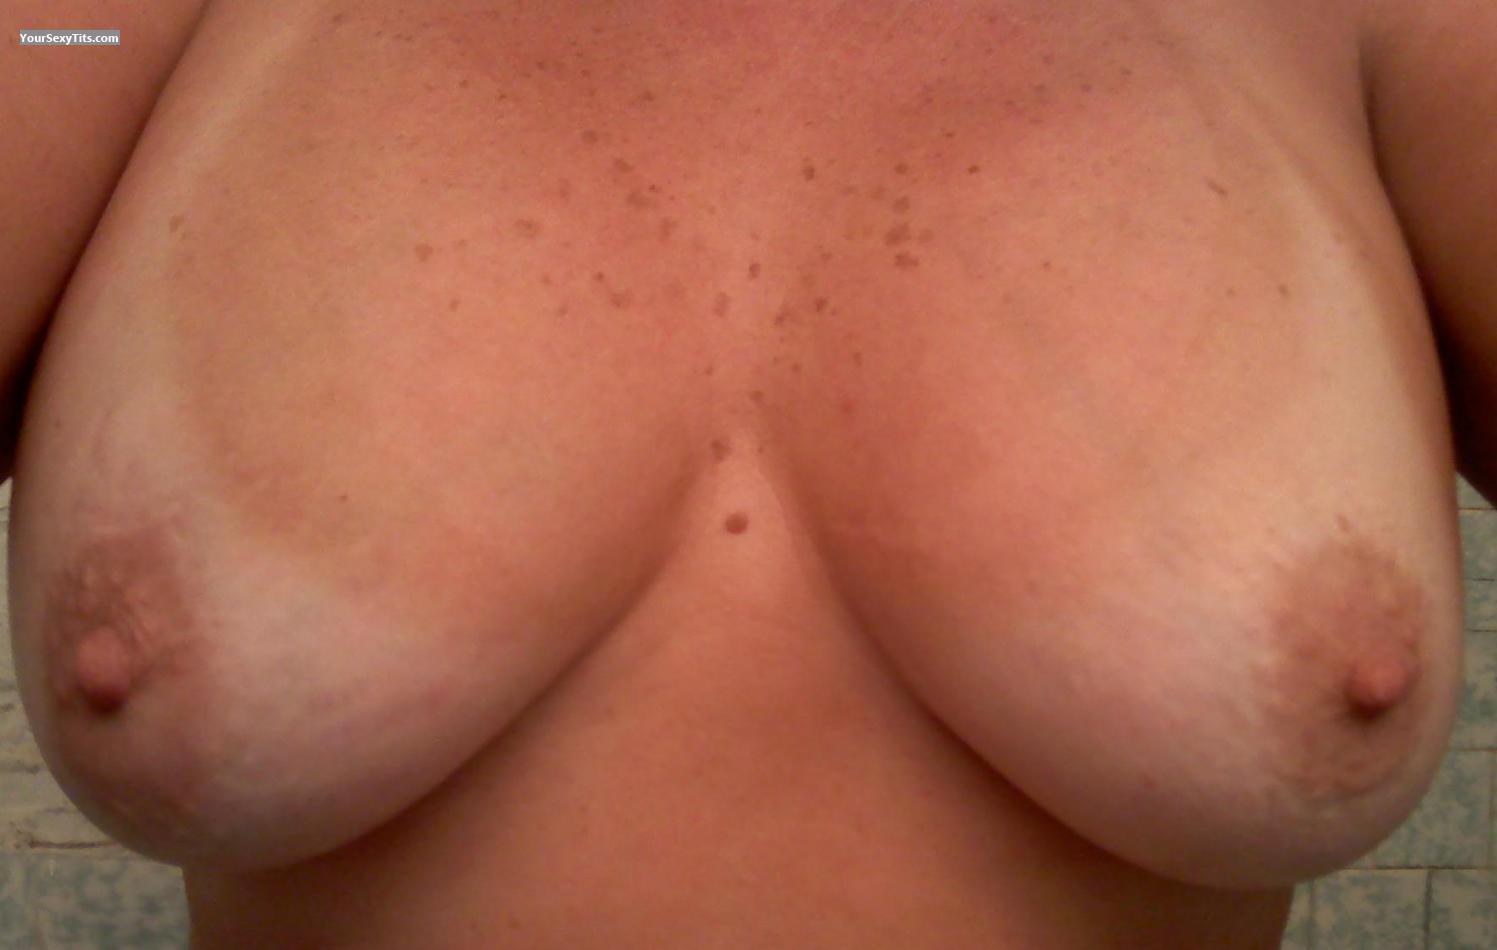 Tit Flash: My Big Tits (Selfie) - RIGirl from United States